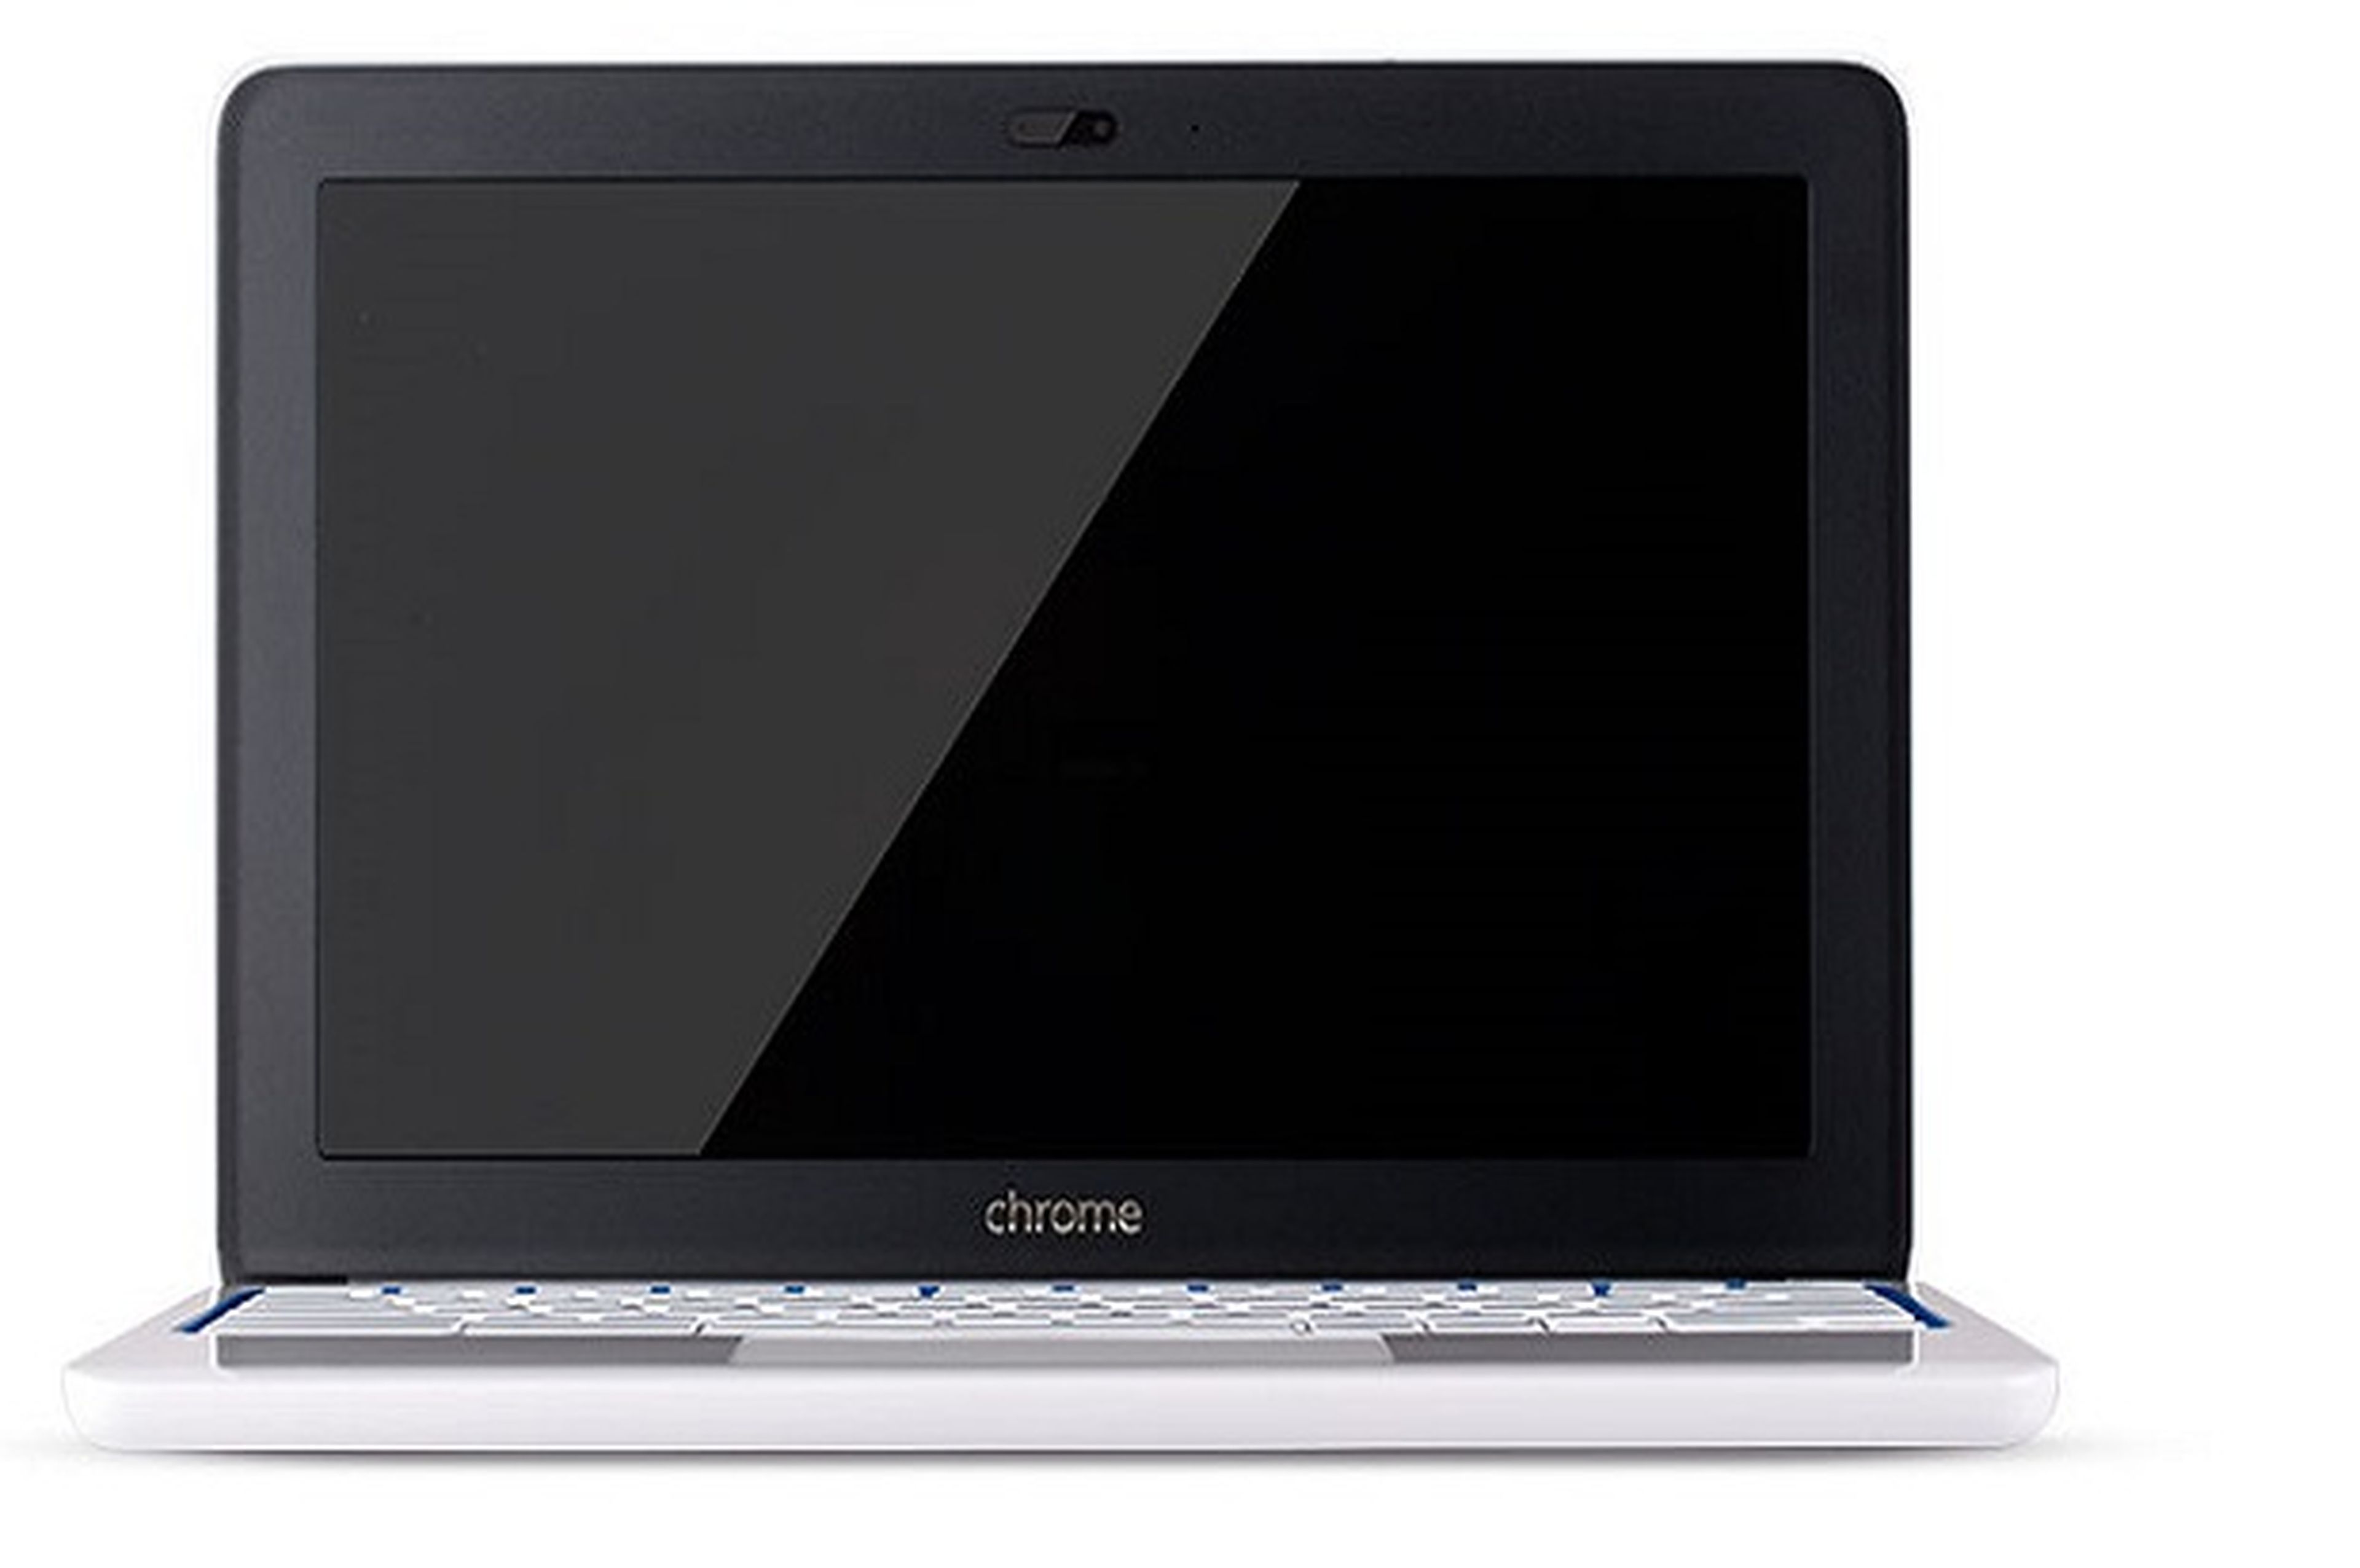 HP Chromebook 11 anunciado oficialmente por Google